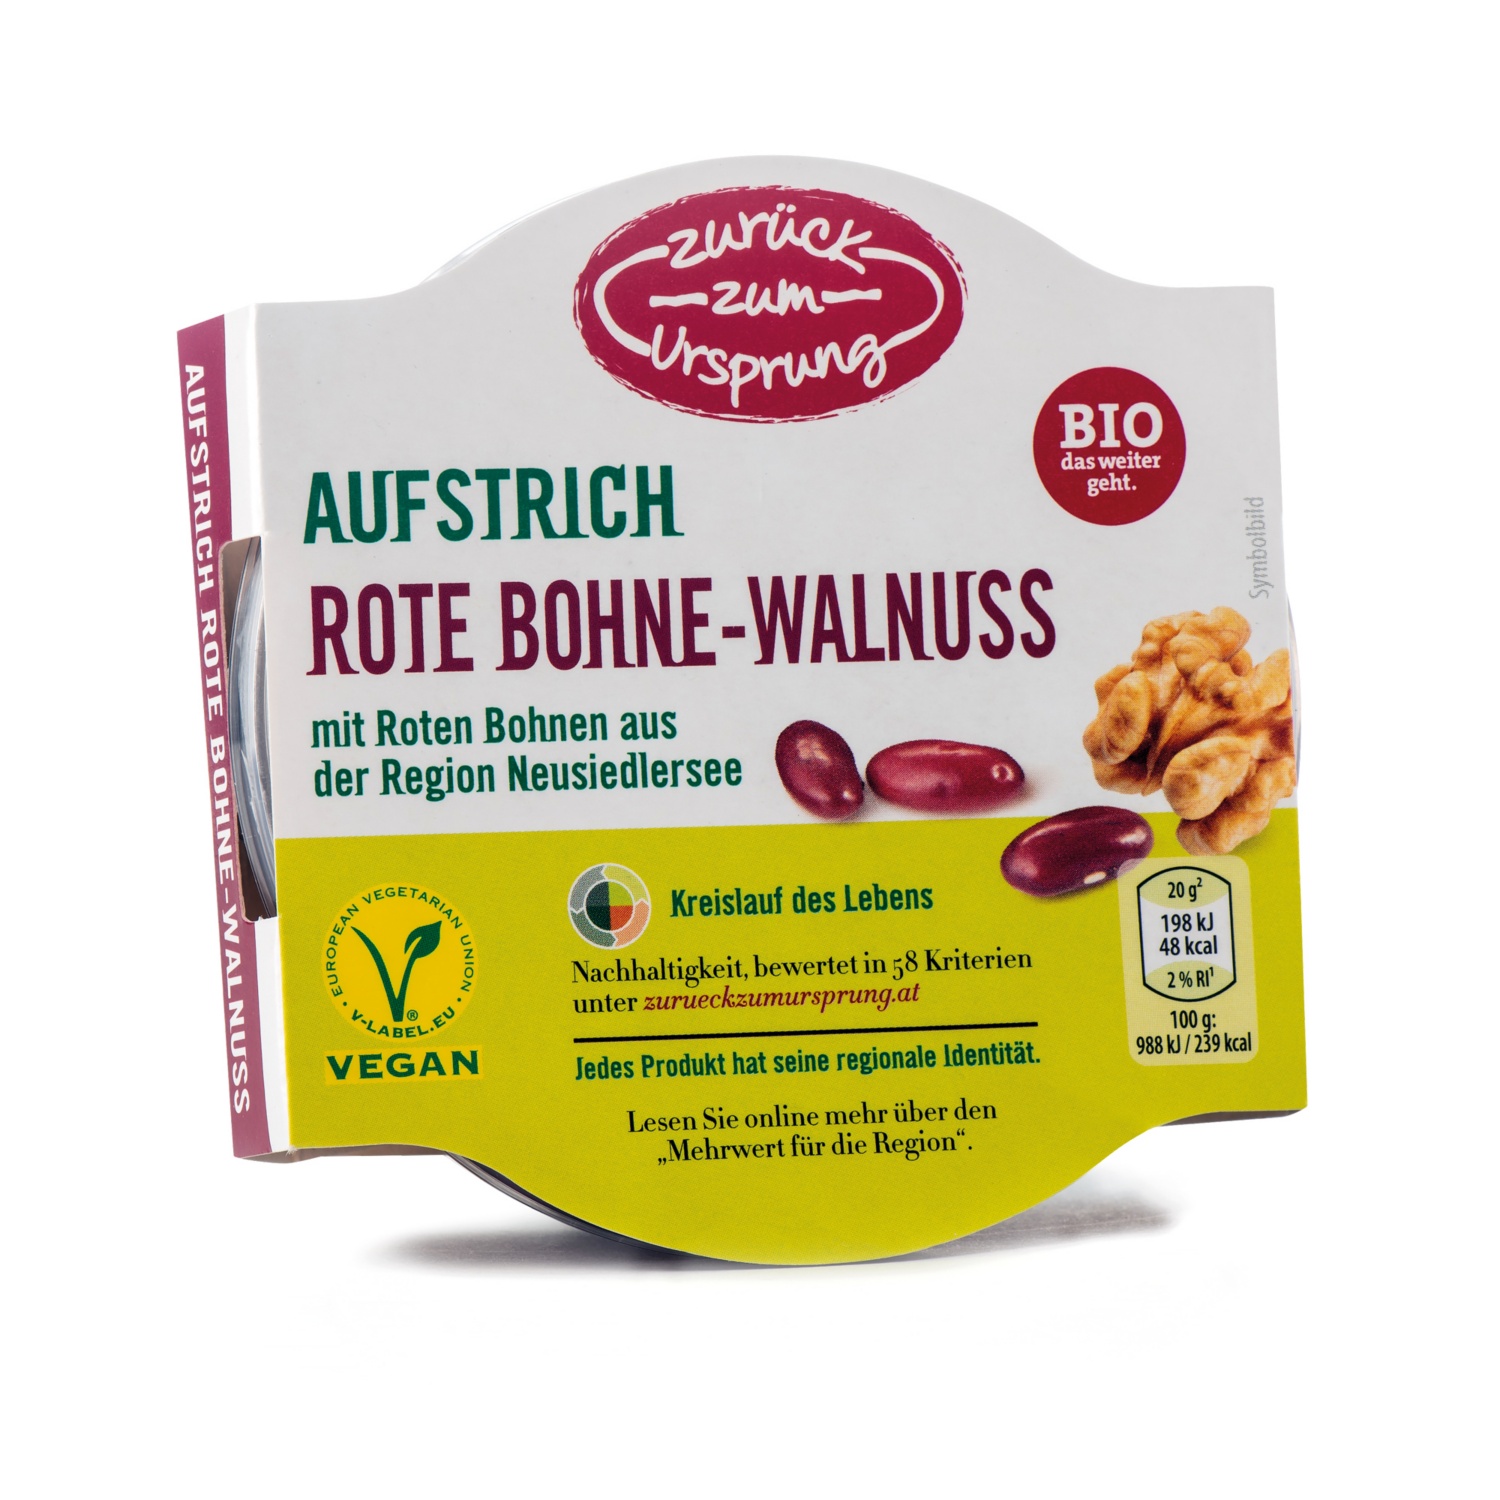 ZURÜCK ZUM URSPRUNG BIO-Veganer Aufstrich, Rote Bohne-Walnuss